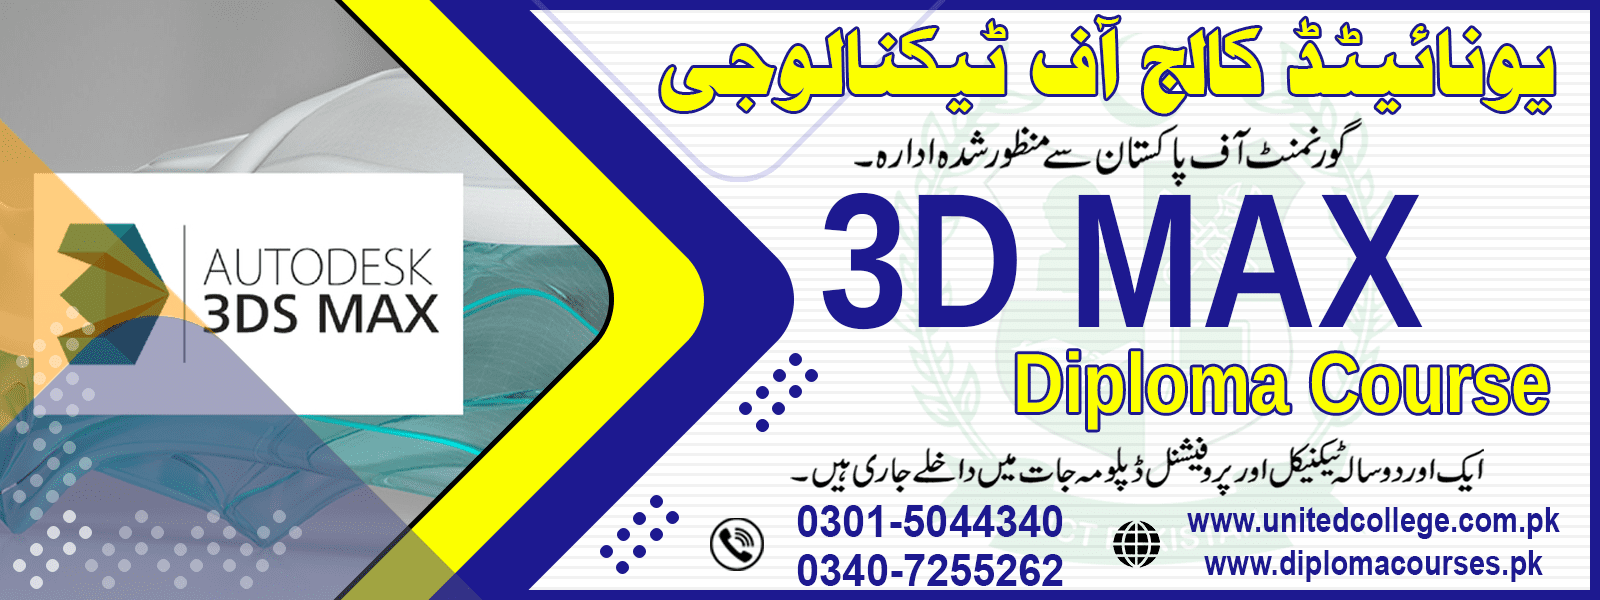 3D MAX COURSE IN RAWALPINDI ISLAMABAD PAKISTAN